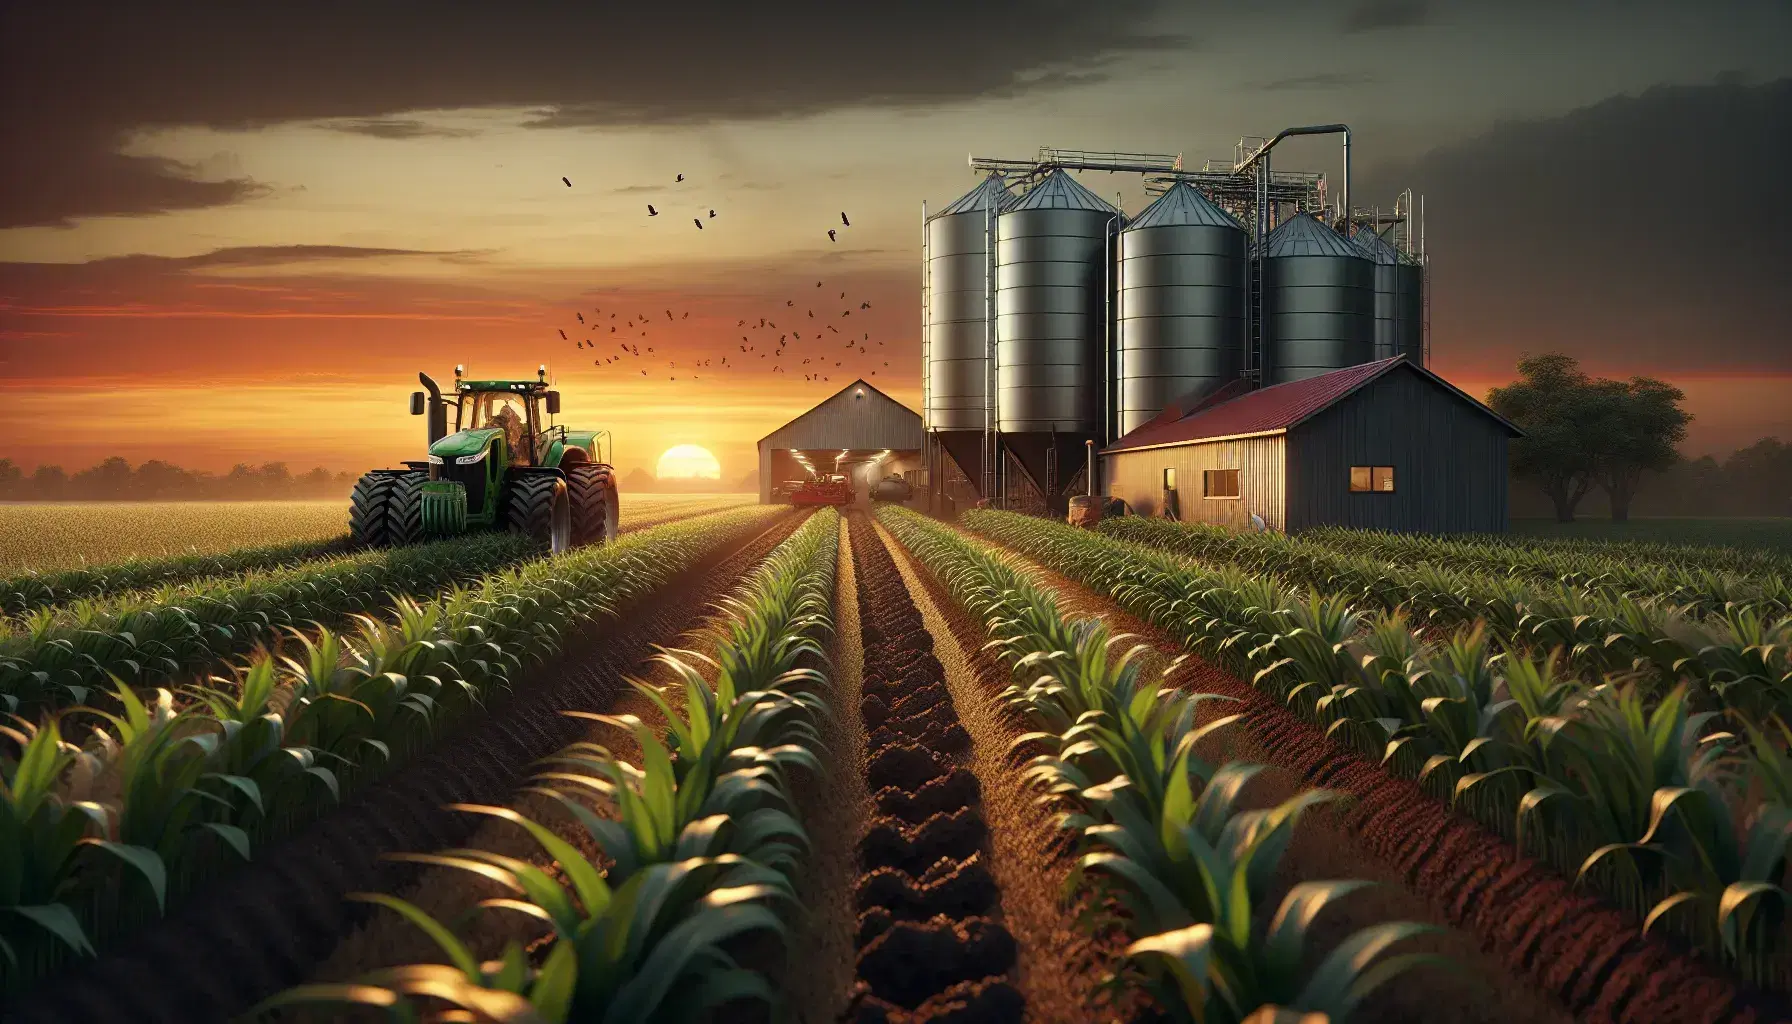 Campo agricolo al tramonto con trattore che lavora il terreno, piante rigogliose in primo piano e silos metallici sullo sfondo sotto un cielo infuocato.